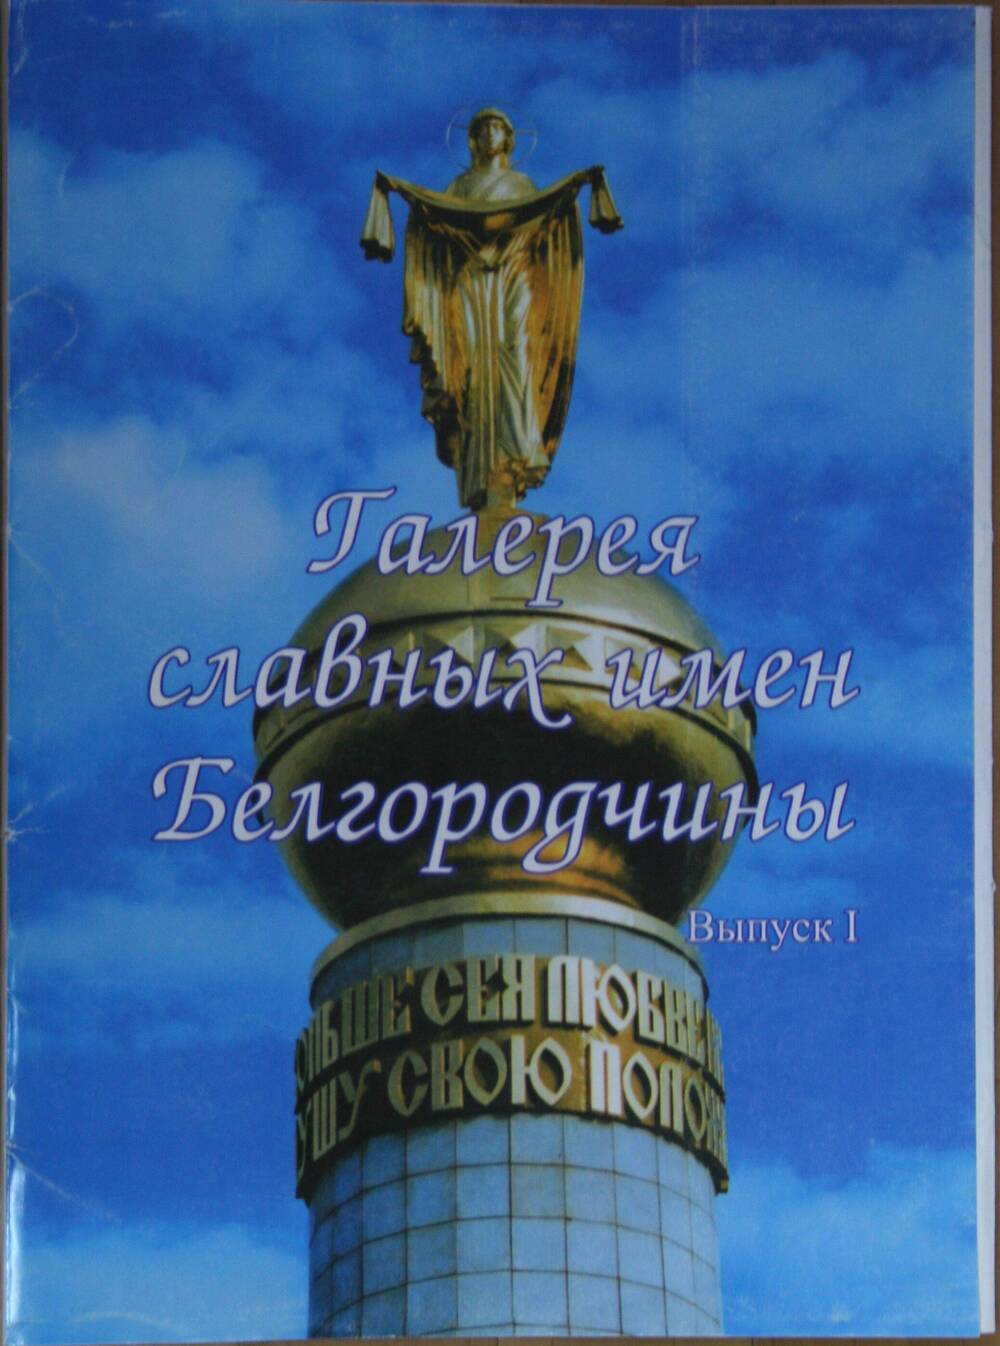 Обложка к комплекту плакатов (фотопортретов) Галерея славных имен Белгородчины.